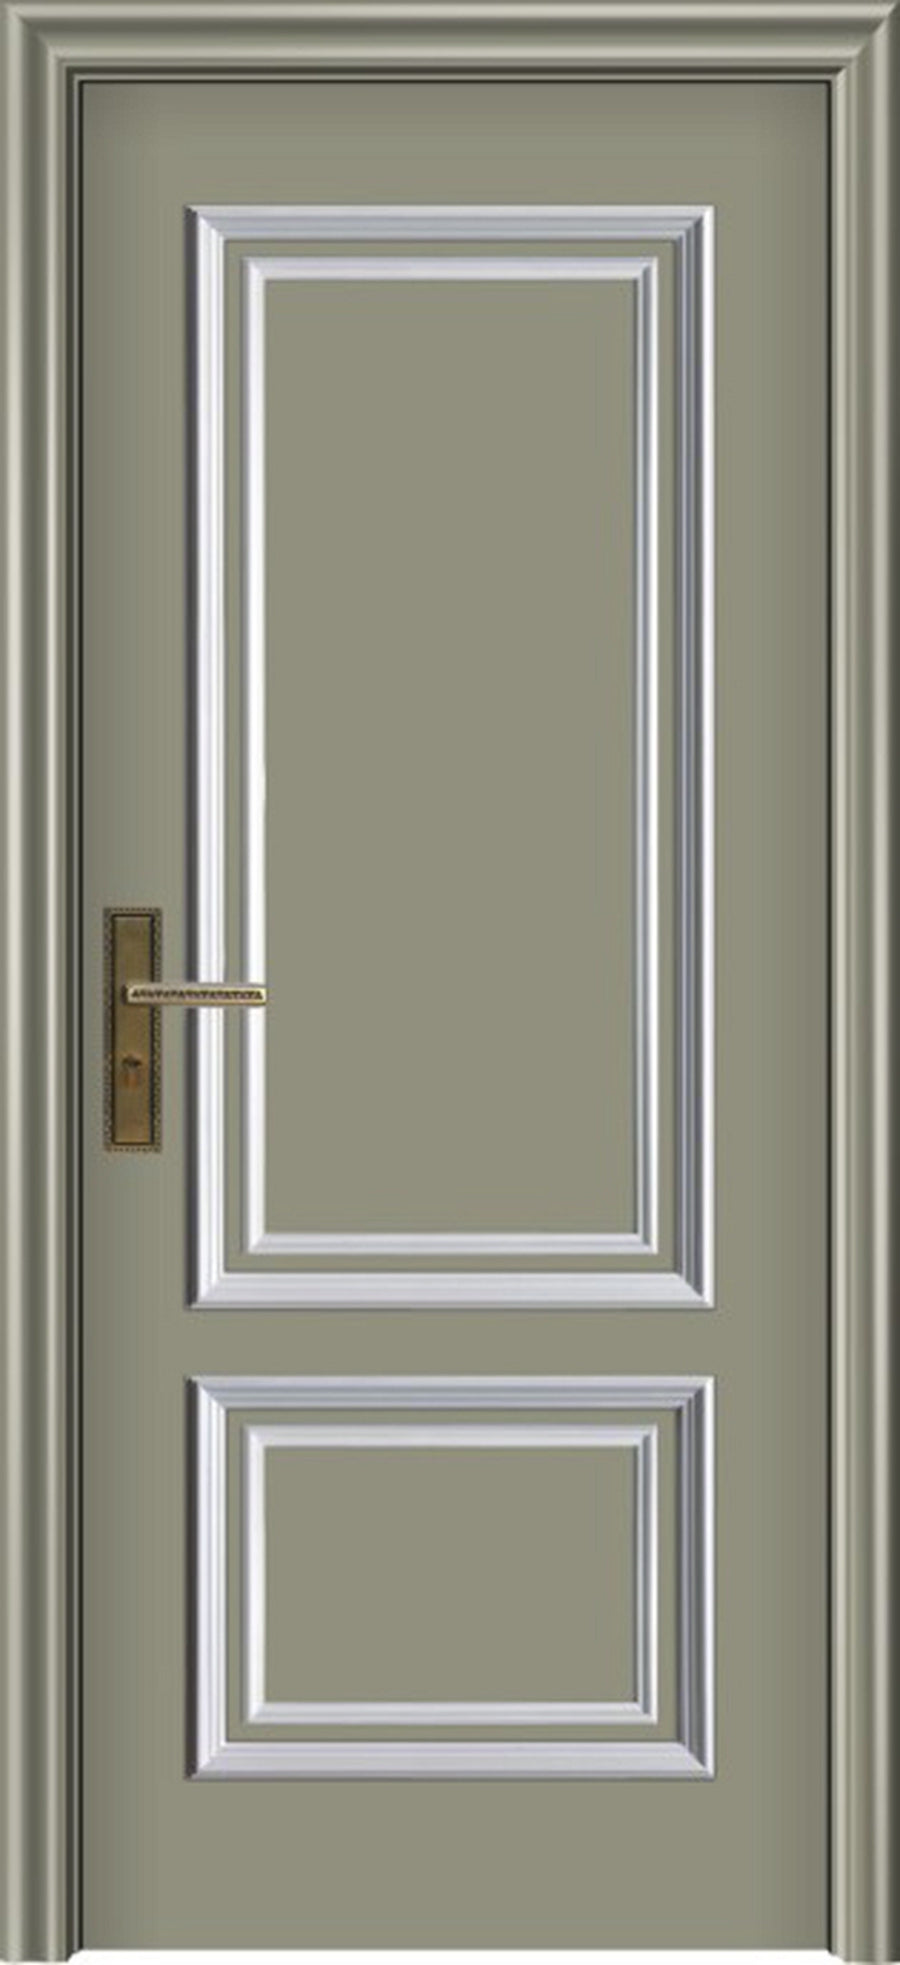 KS-1403- Solid Core Door- Golden Open